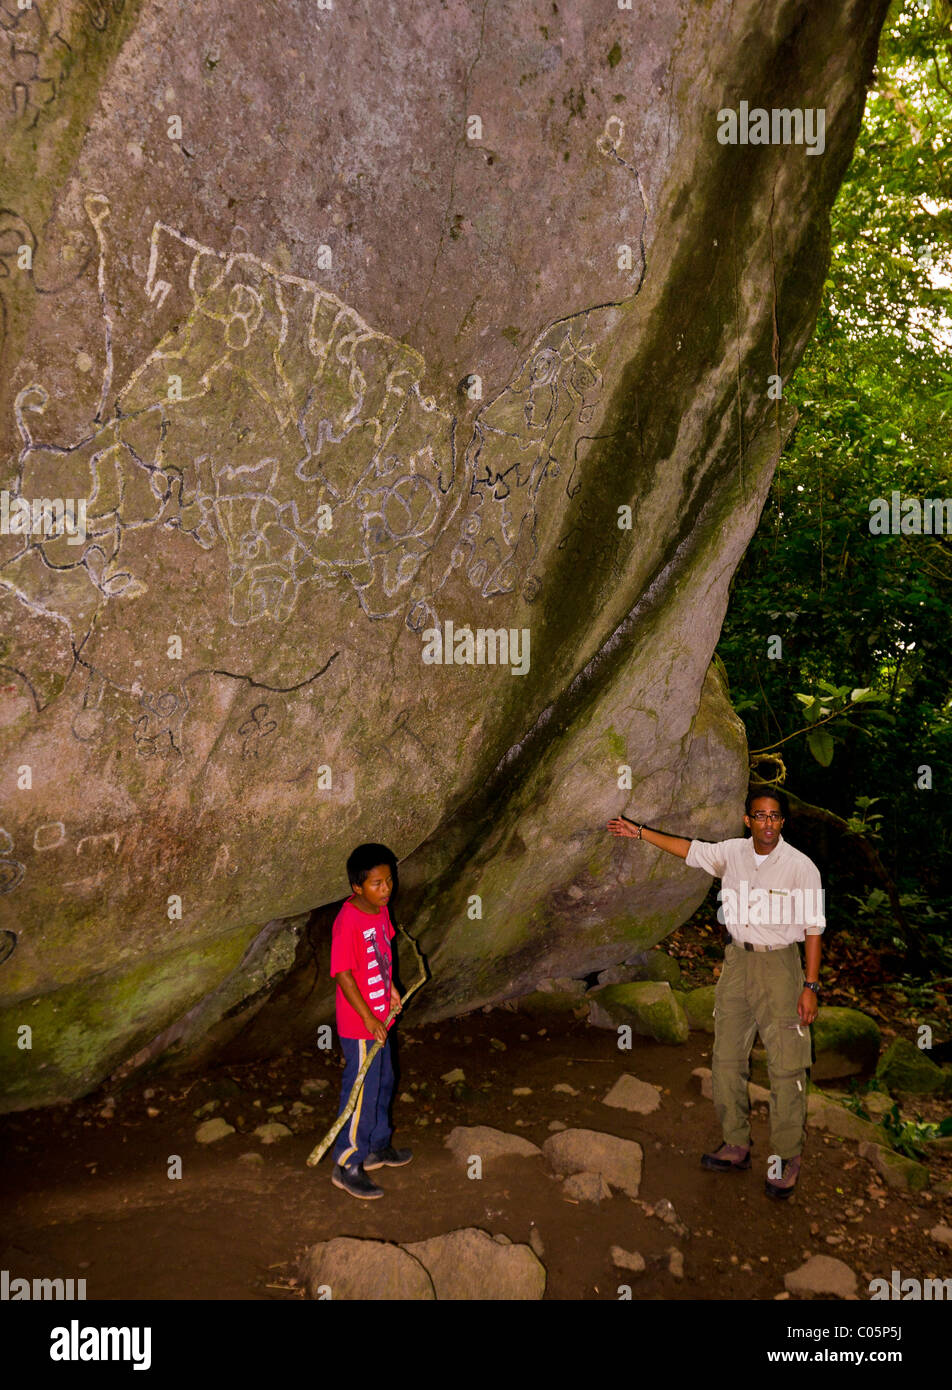 EL VALLE de Anton, PANAMA - l'art rupestre aborigène et des guides touristiques, à la Sendero de la Piedra Pintada. Banque D'Images